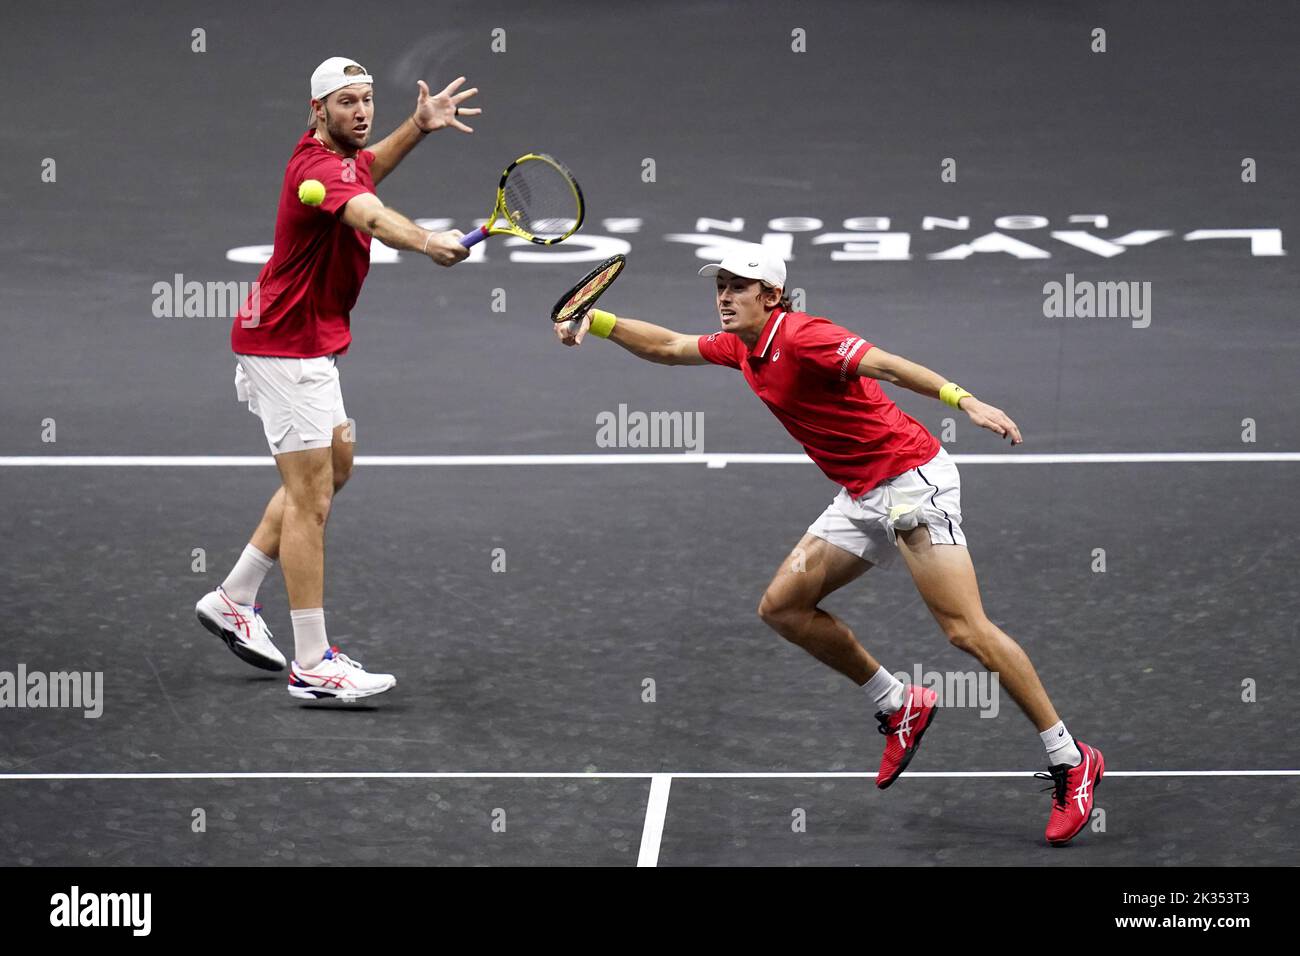 Alex De Minaur , (derecha) y Jack Sock durante su partido de dobles contra Novak Djokovic y Matteo Berrettini en el segundo día de la Copa Laver en el O2 Arena, Londres. Fecha de la foto: Sábado 24 de septiembre de 2022. Foto de stock